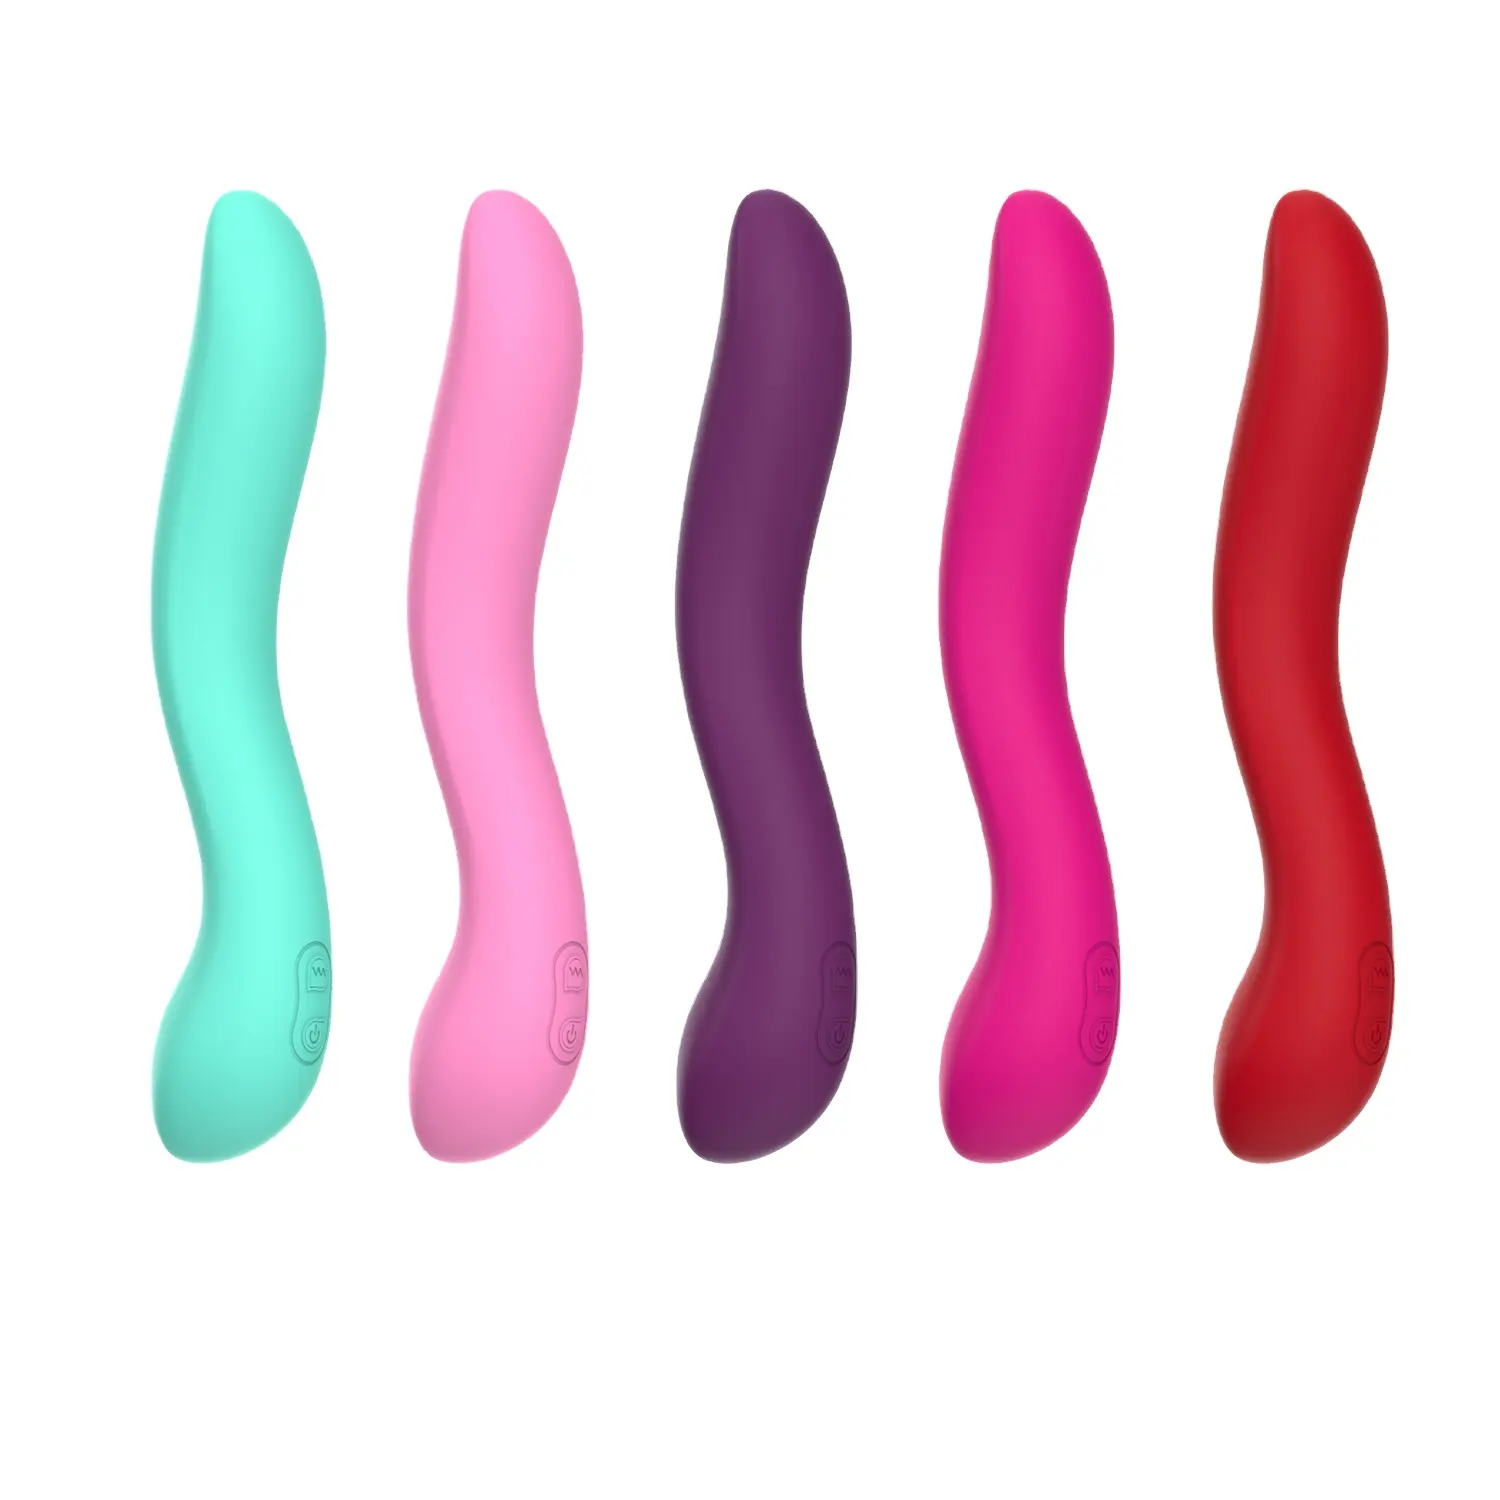 Ltd. Vibrator Mastrubuator Pack Push Saug kolkata schöne einführ bare Frauen Mastur batoren Vibrator Erwachsenen Sexspielzeug für Frauen